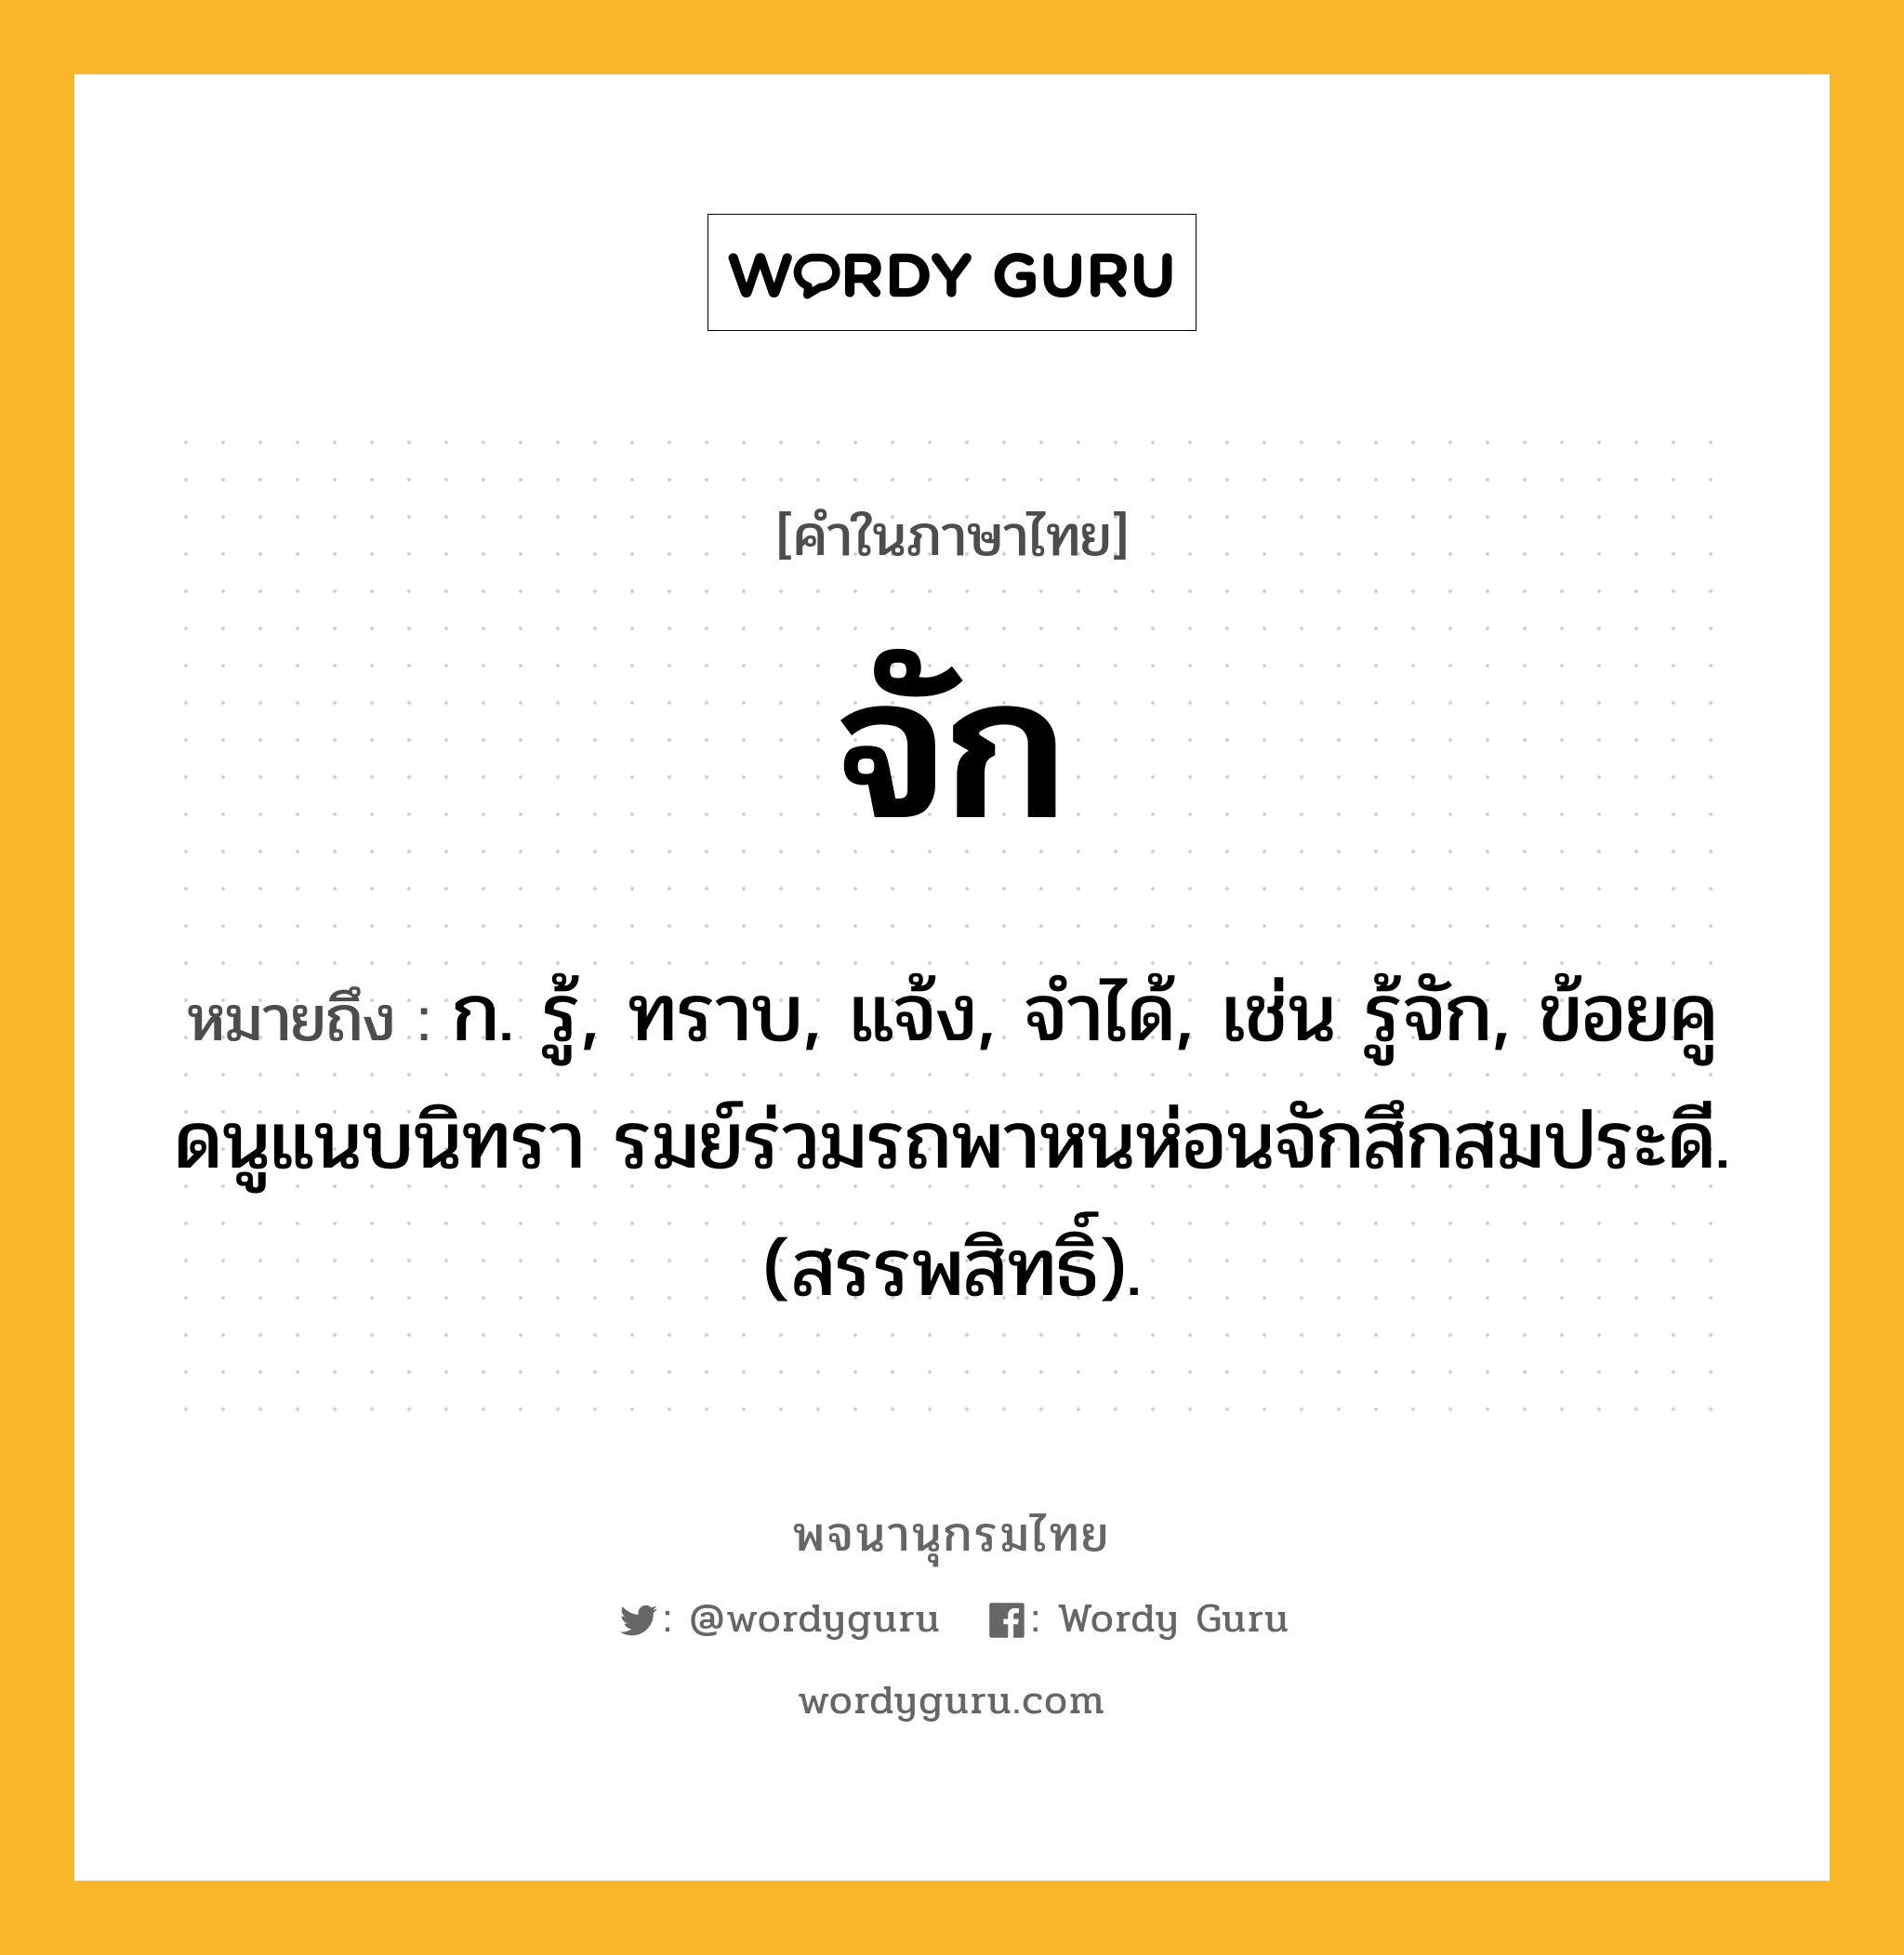 จัก ความหมาย หมายถึงอะไร?, คำในภาษาไทย จัก หมายถึง ก. รู้, ทราบ, แจ้ง, จําได้, เช่น รู้จัก, ข้อยคูดนูแนบนิทรา รมย์ร่วมรถพาหนห่อนจักสึกสมประดี. (สรรพสิทธิ์).